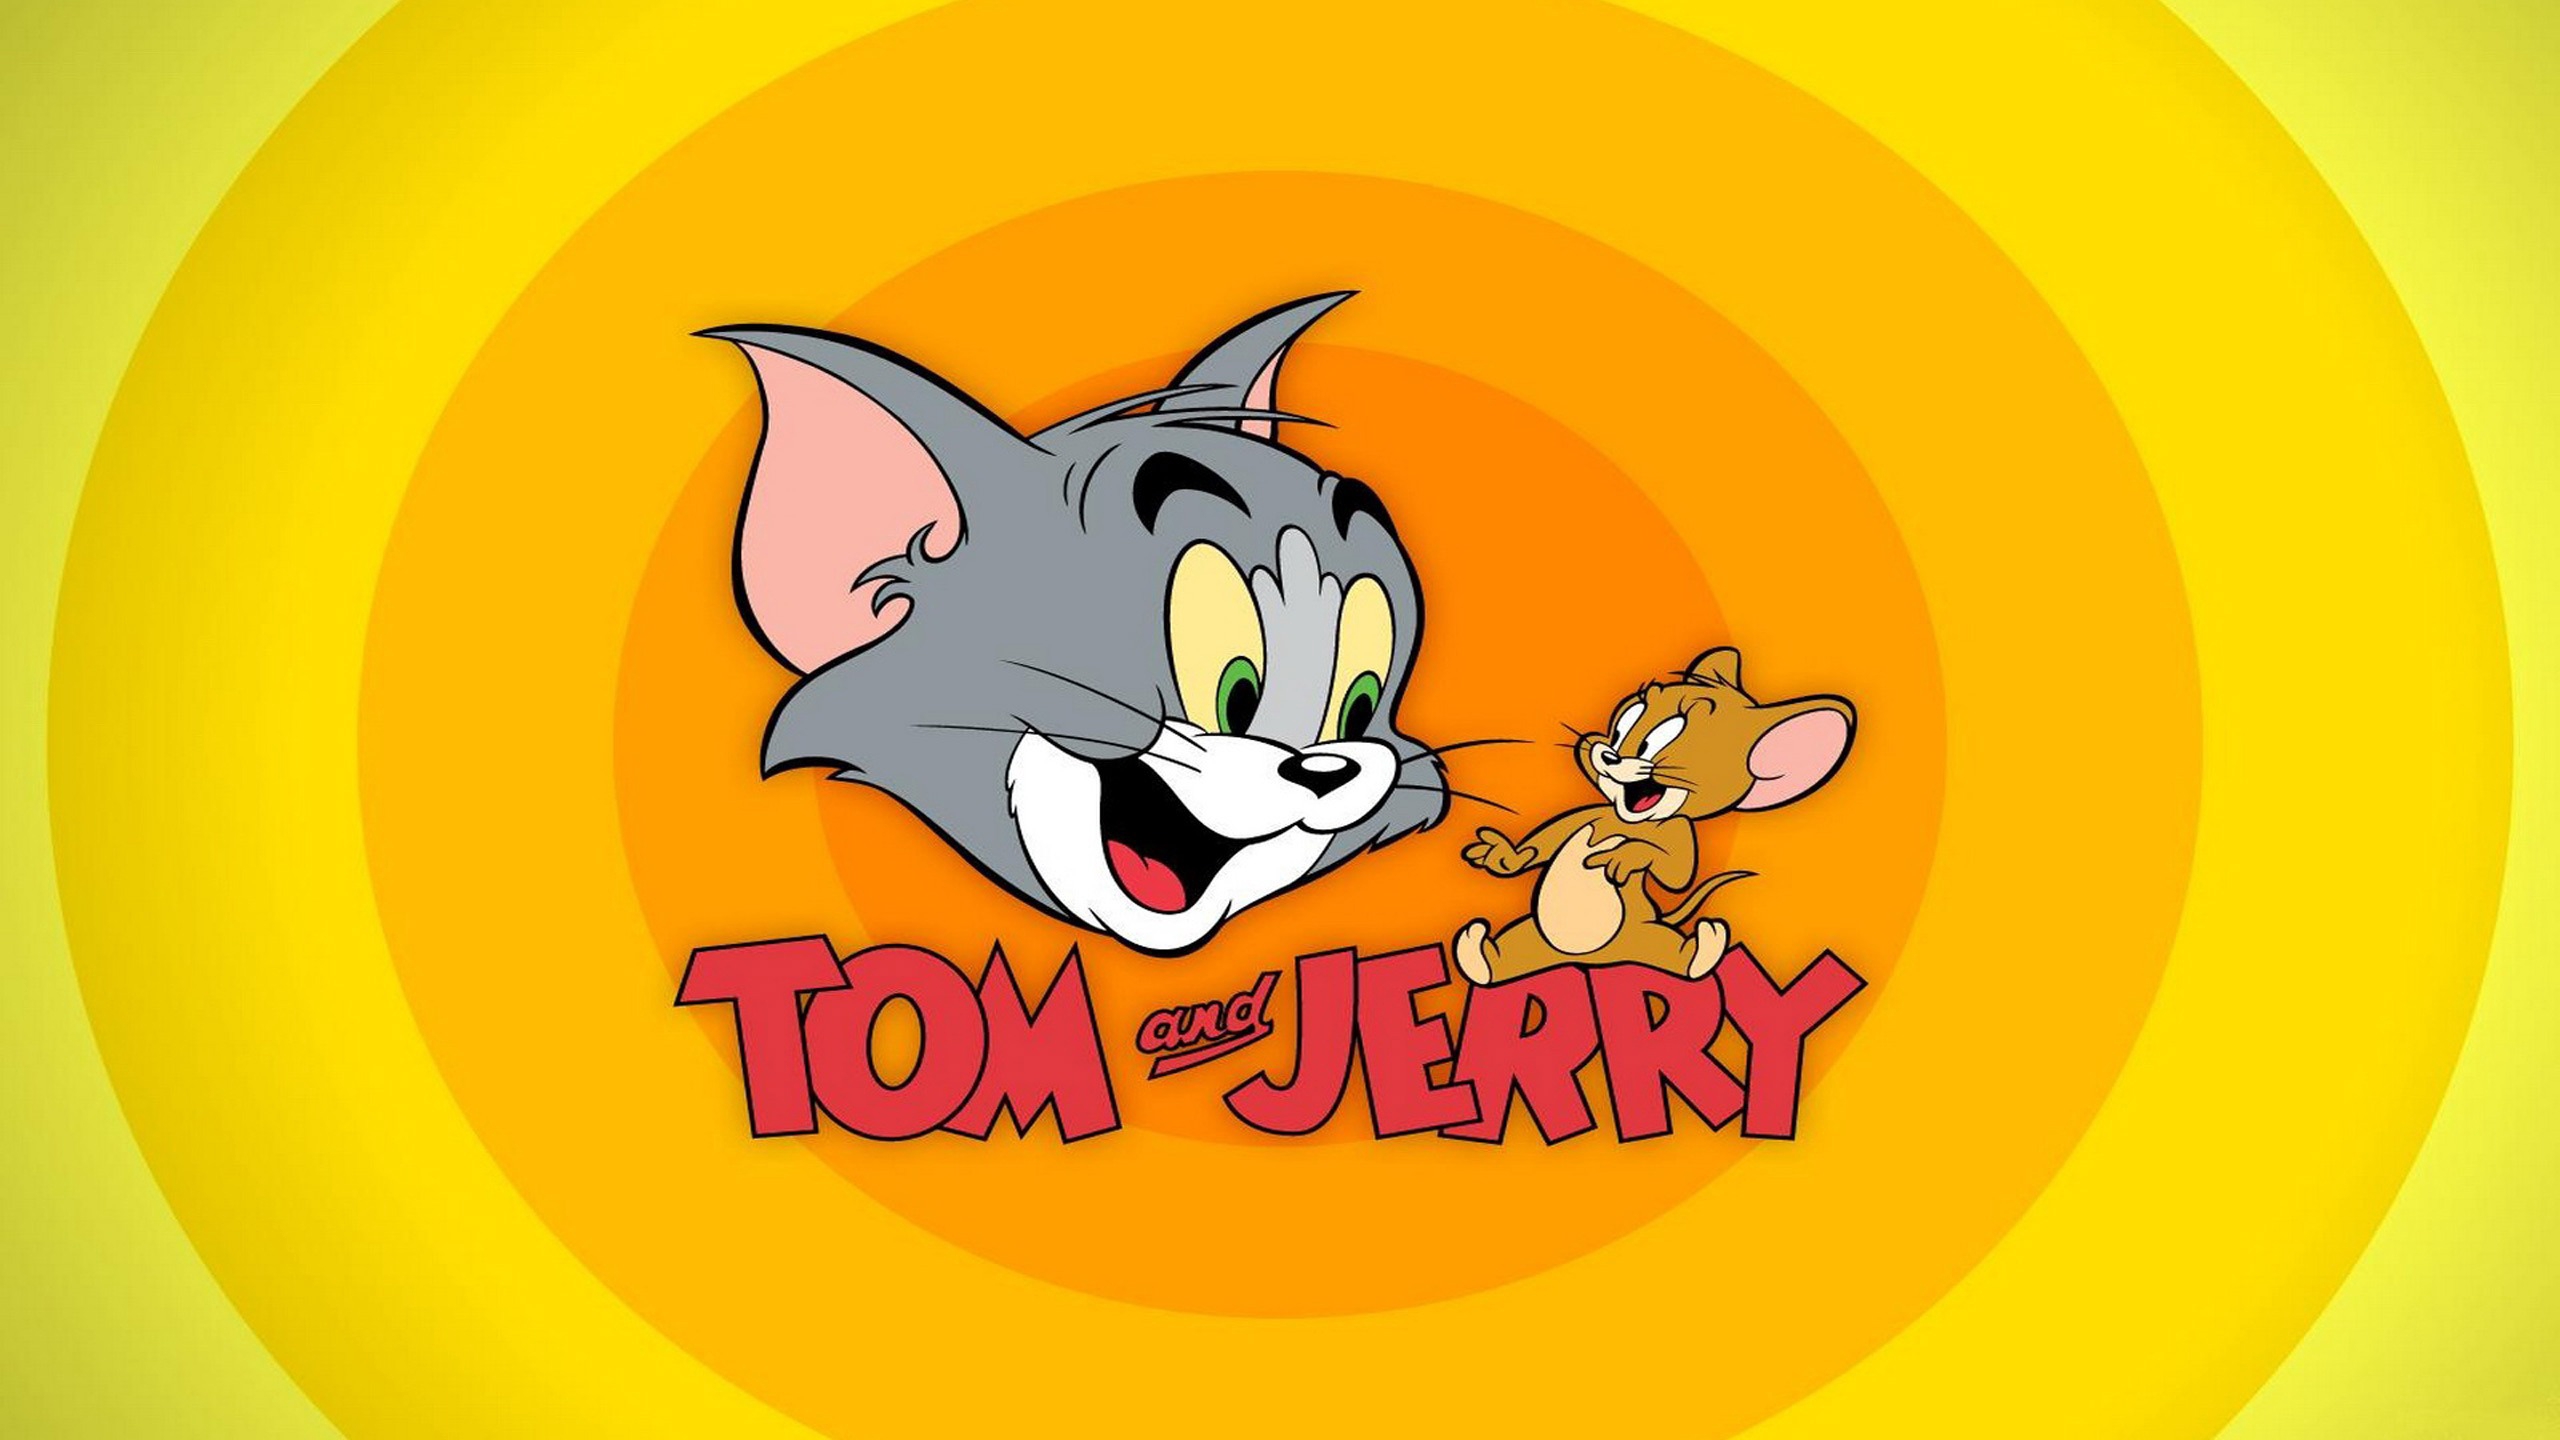 Том и джерри 78. Tom and Jerry. Заставка мультфильма том и Джерри. Том и Джерри картинки.